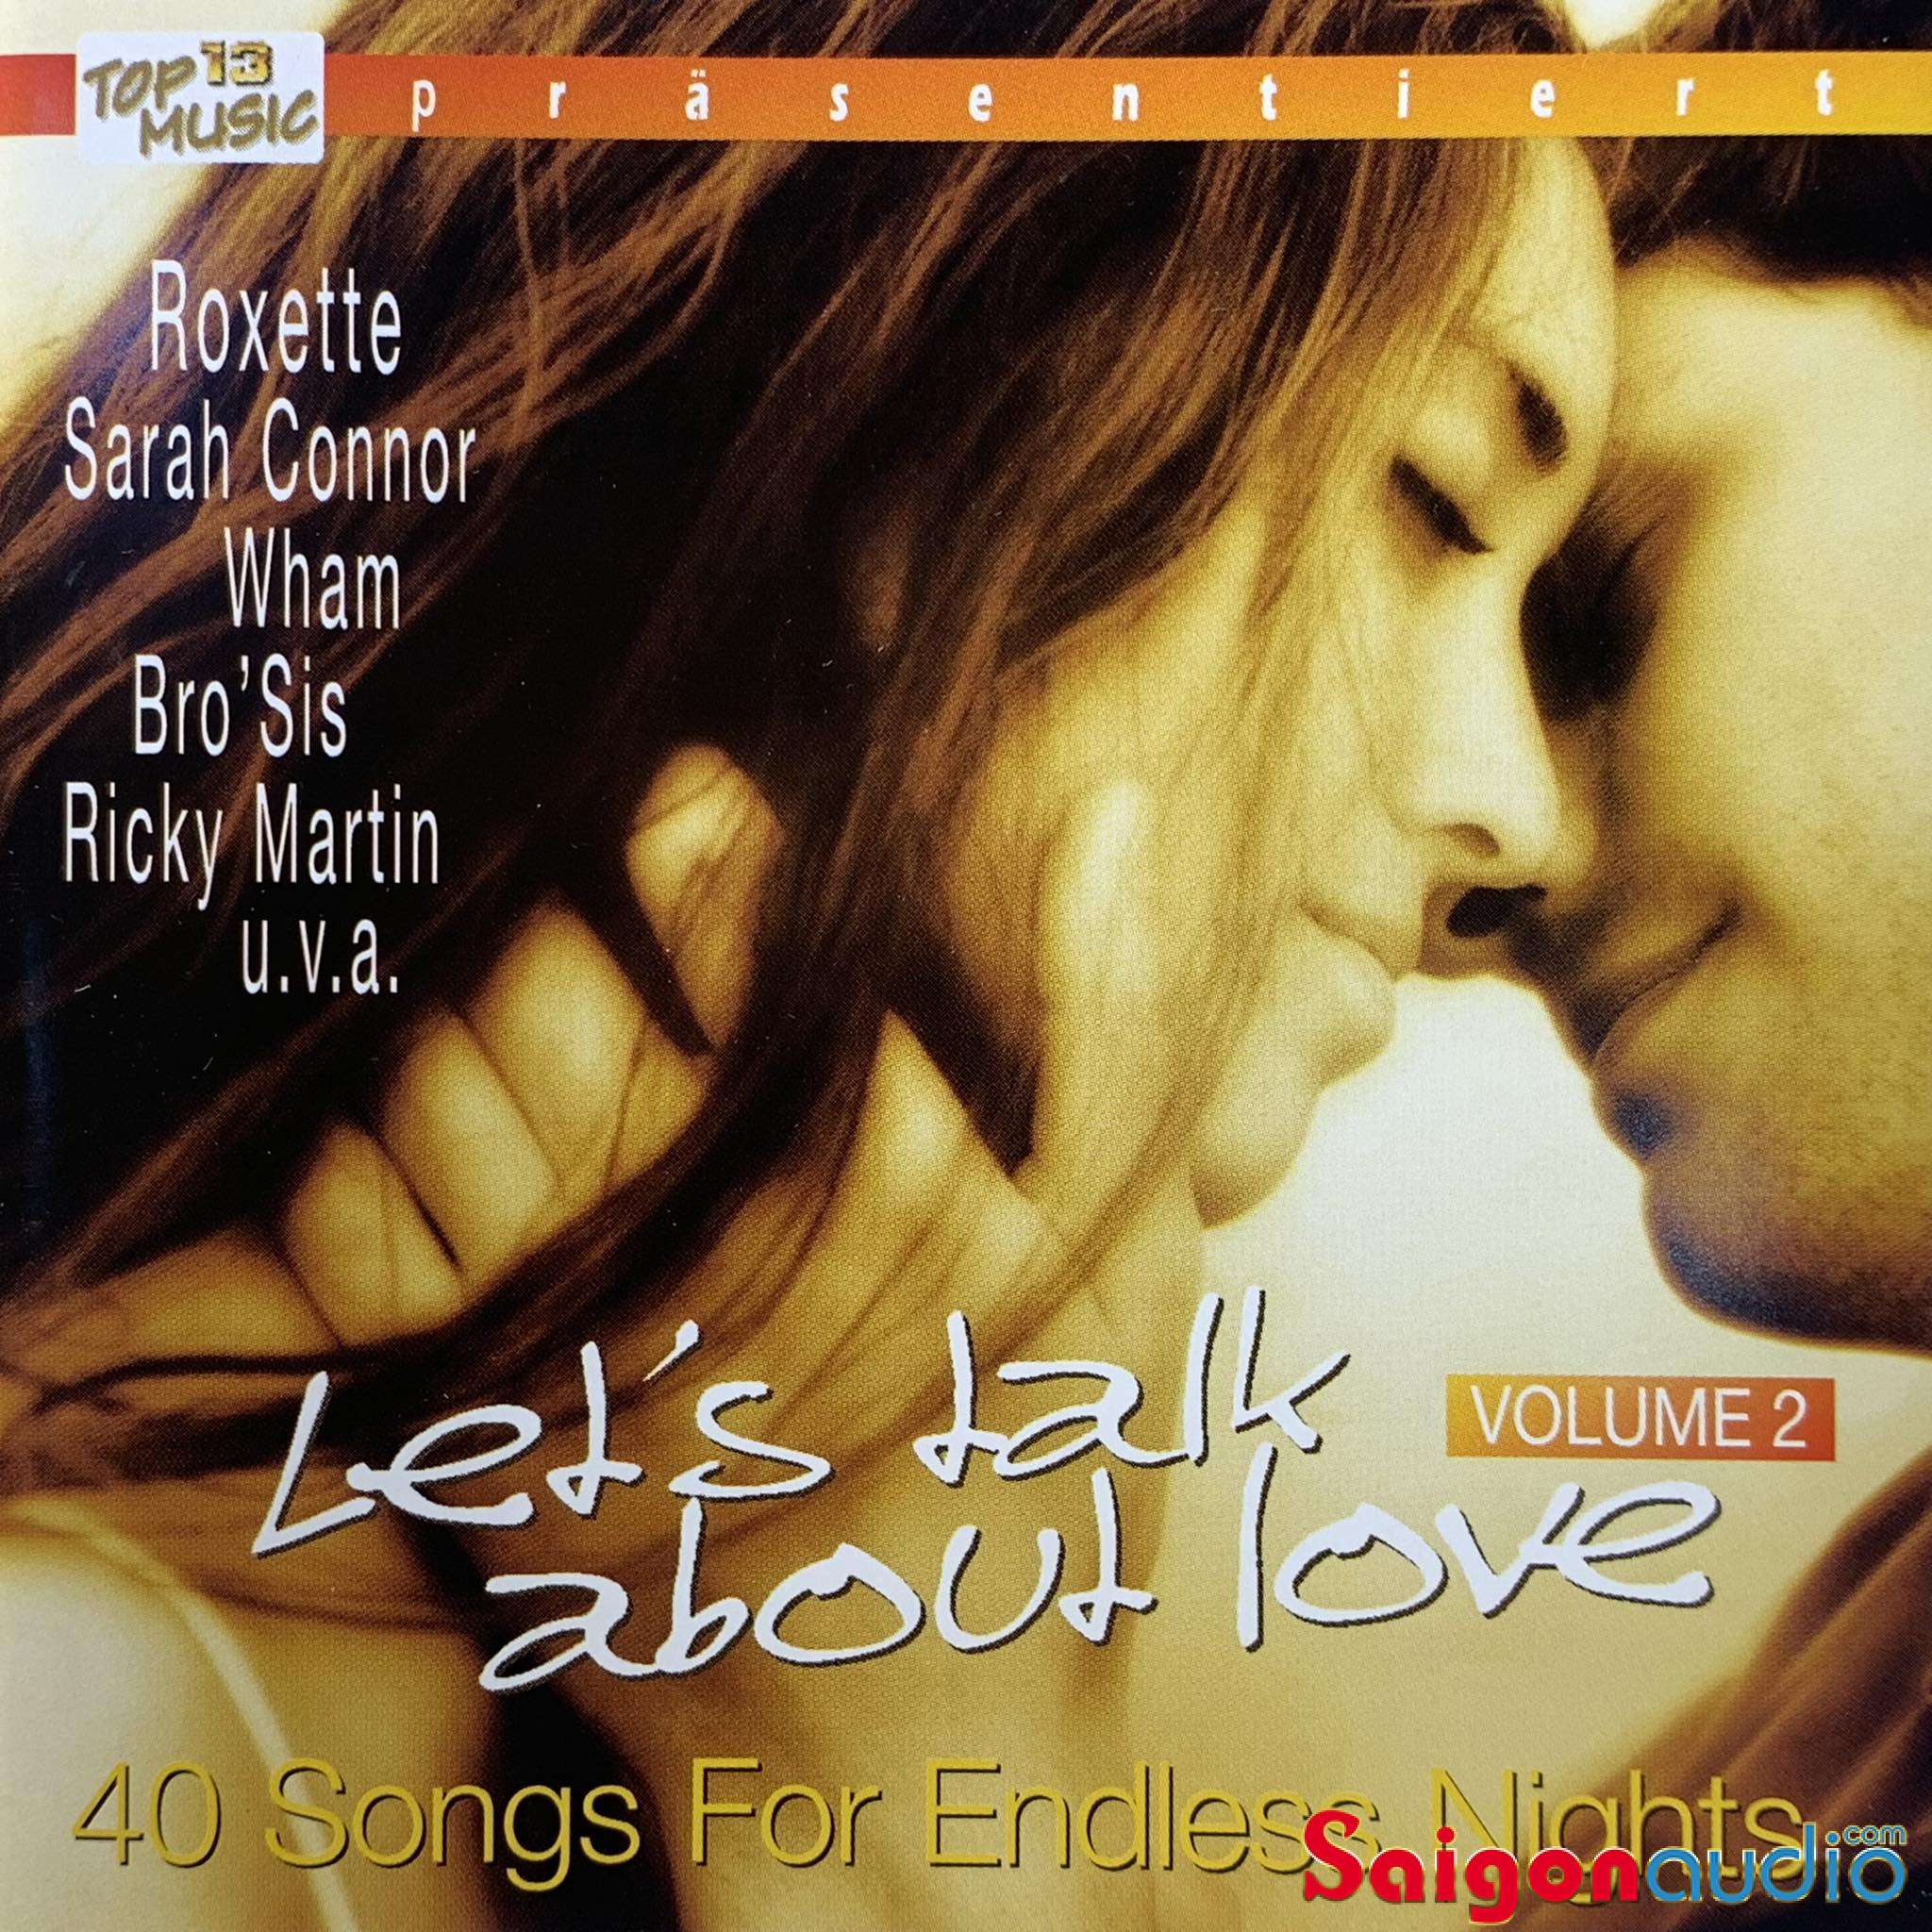 Bộ 2 đĩa CD gốc Top Music - Let s Talk About Love (Free ship khi mua 2 đĩa CD cùng hoặc khác loại)